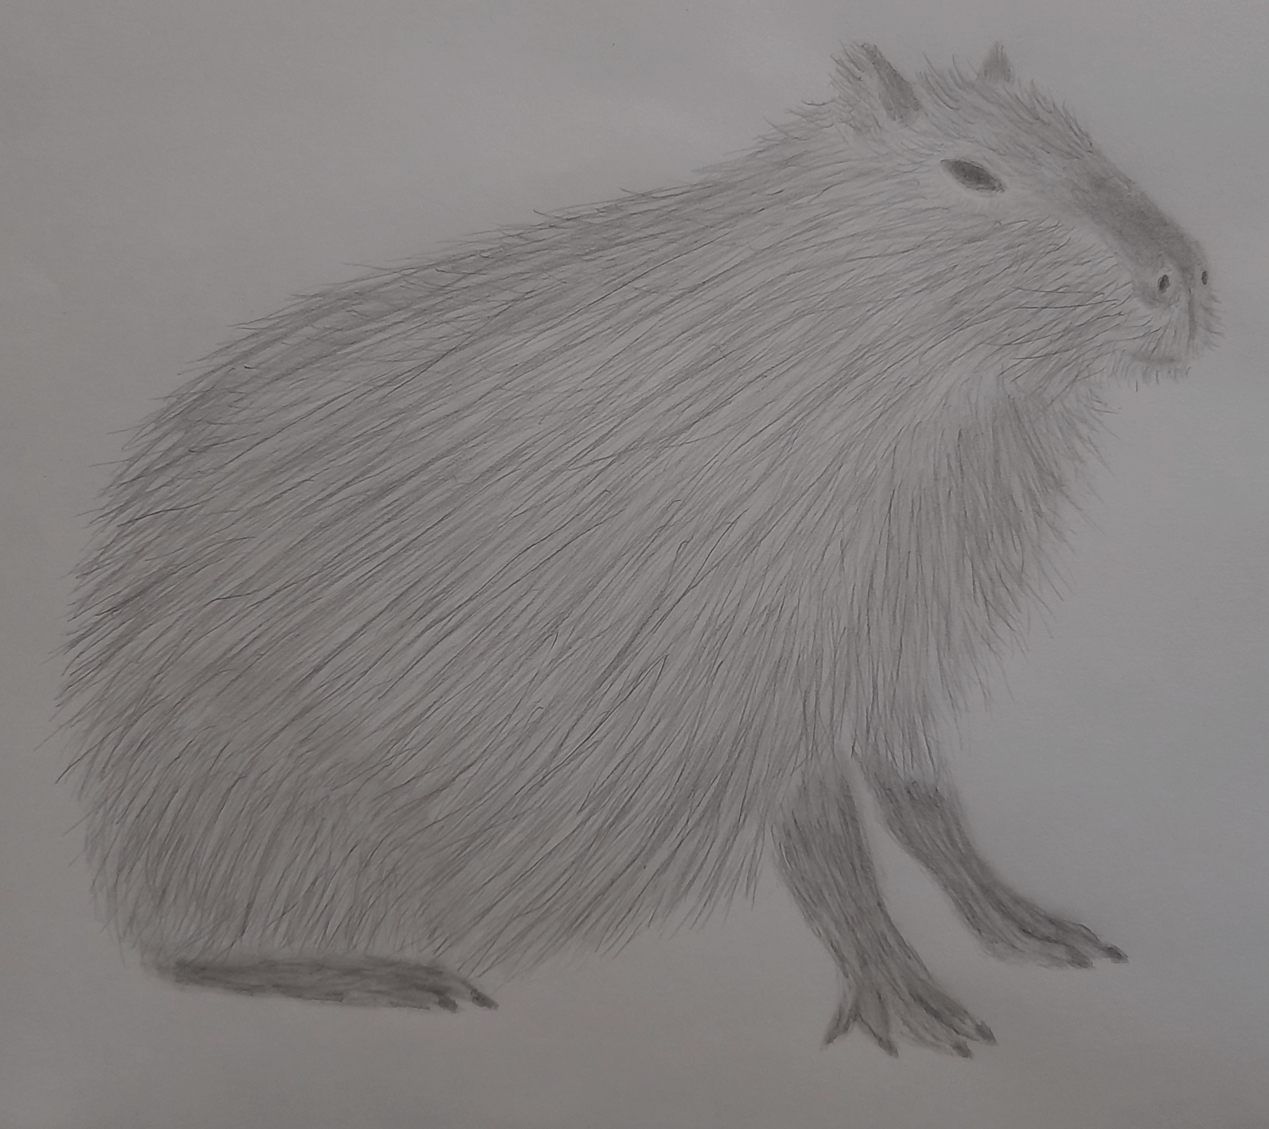 Capybara Drawing Pics